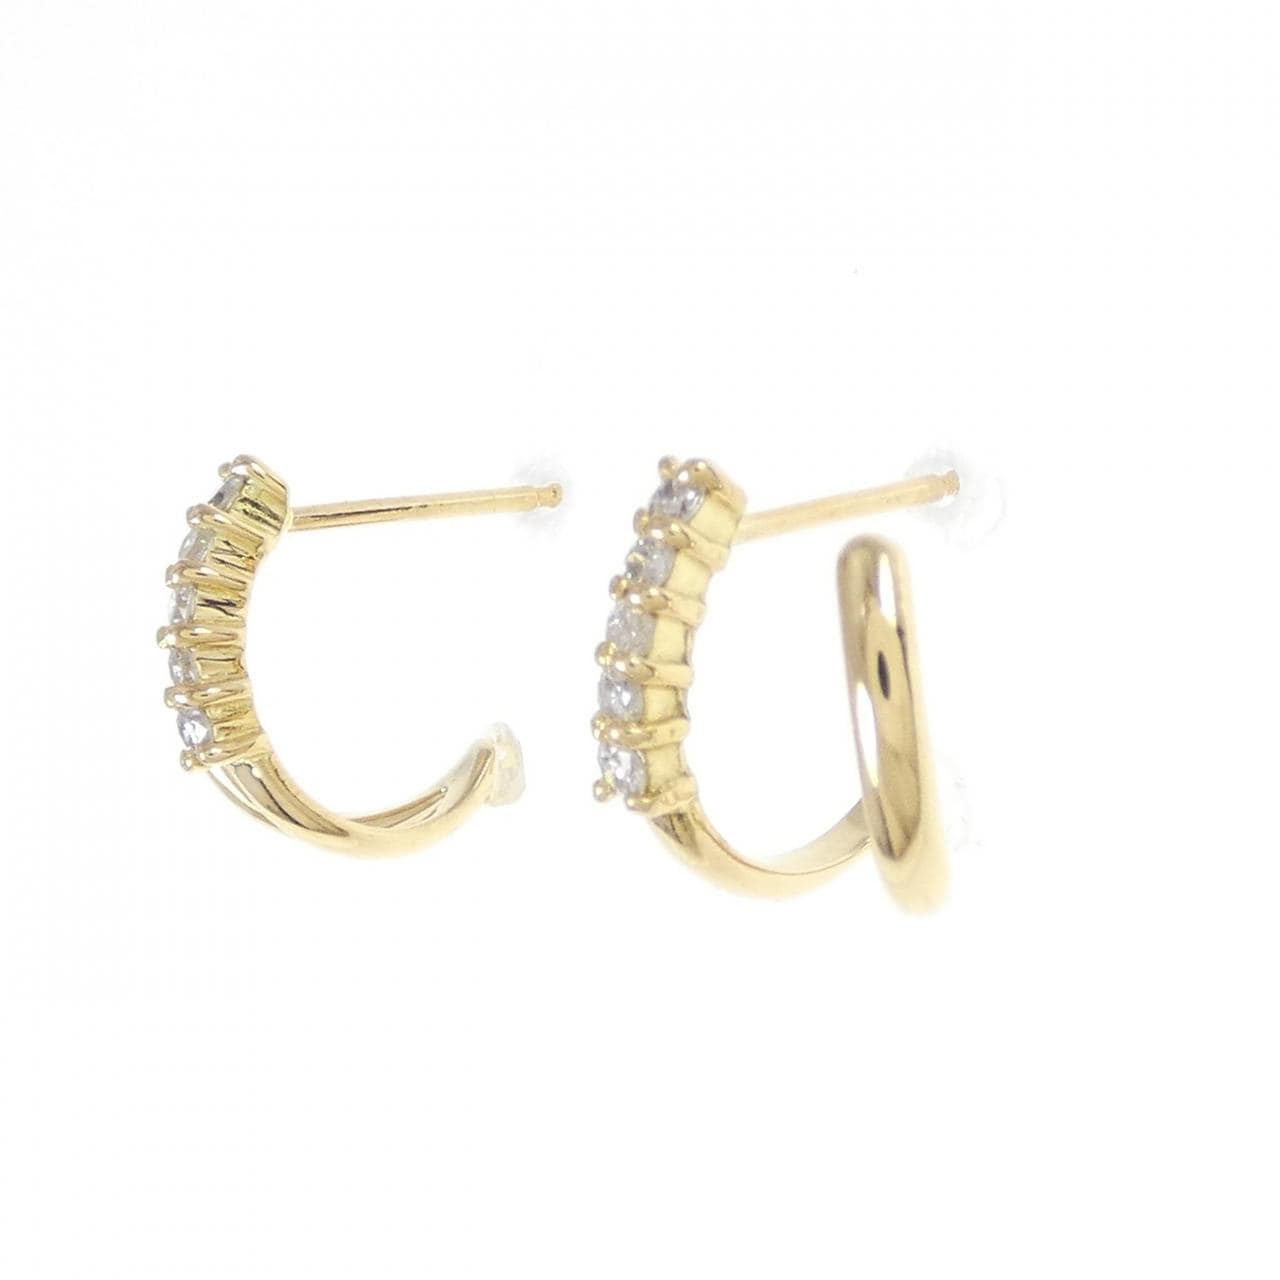 K18YG Diamond earrings 0.20CT